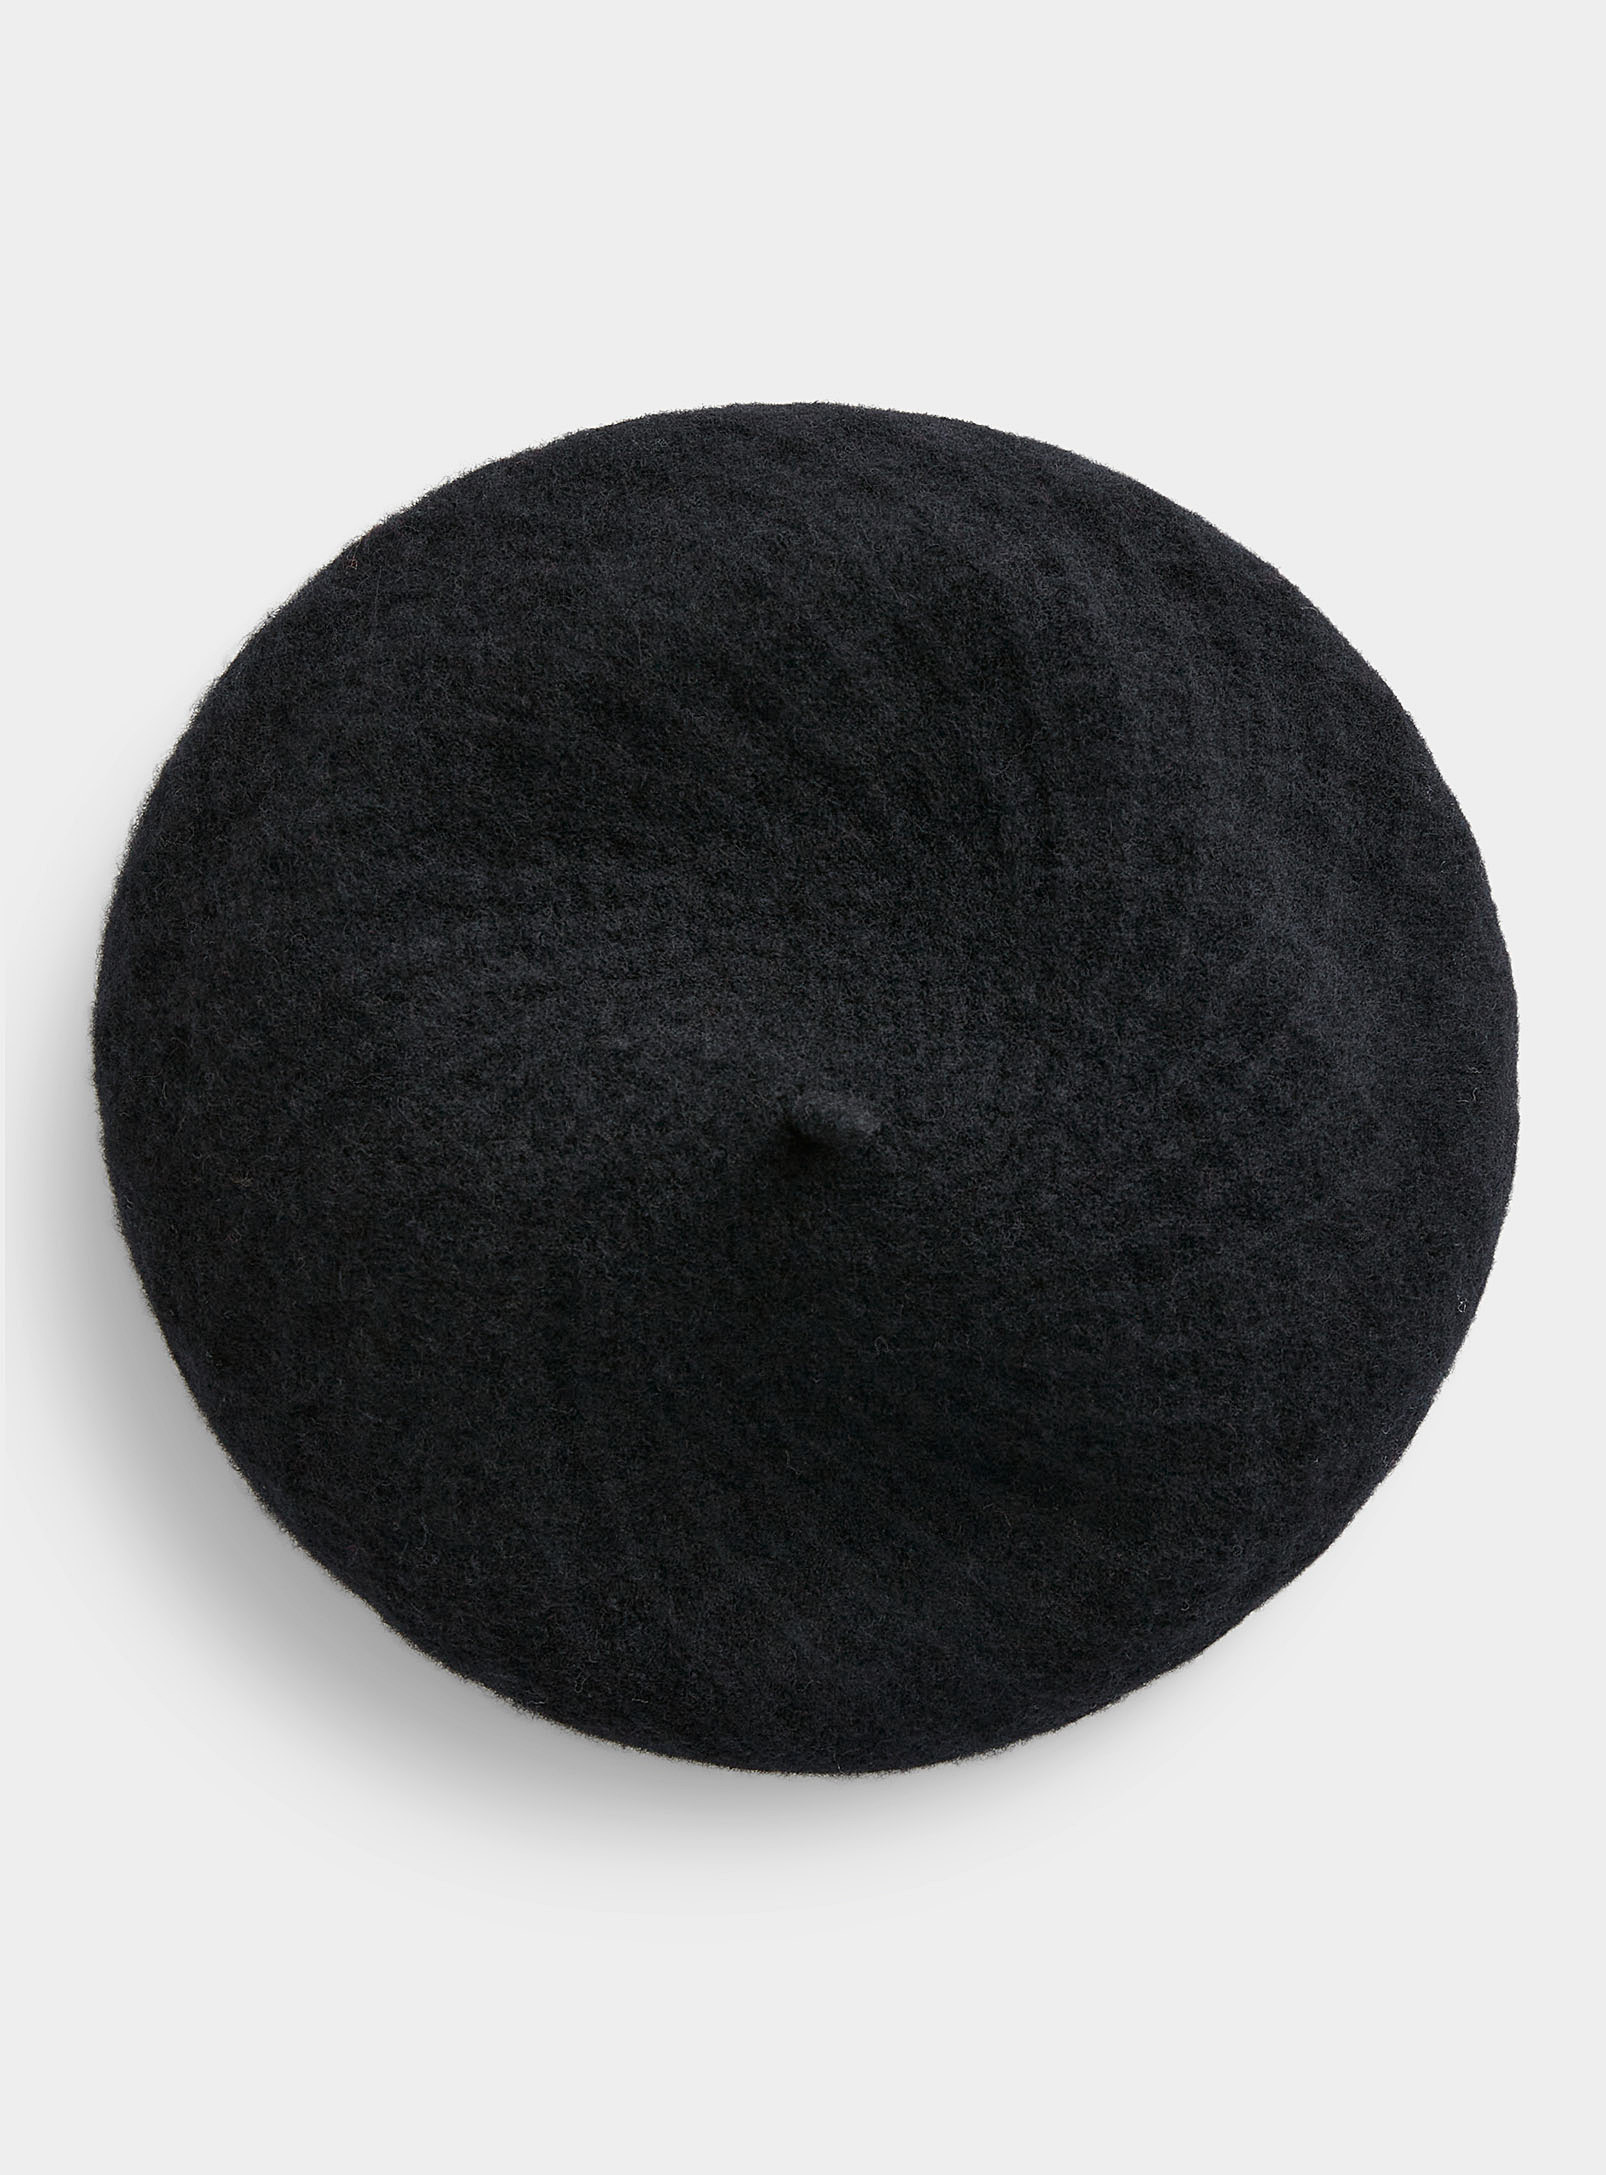 Canadian Hat - Women's Monochrome diamond wool beret